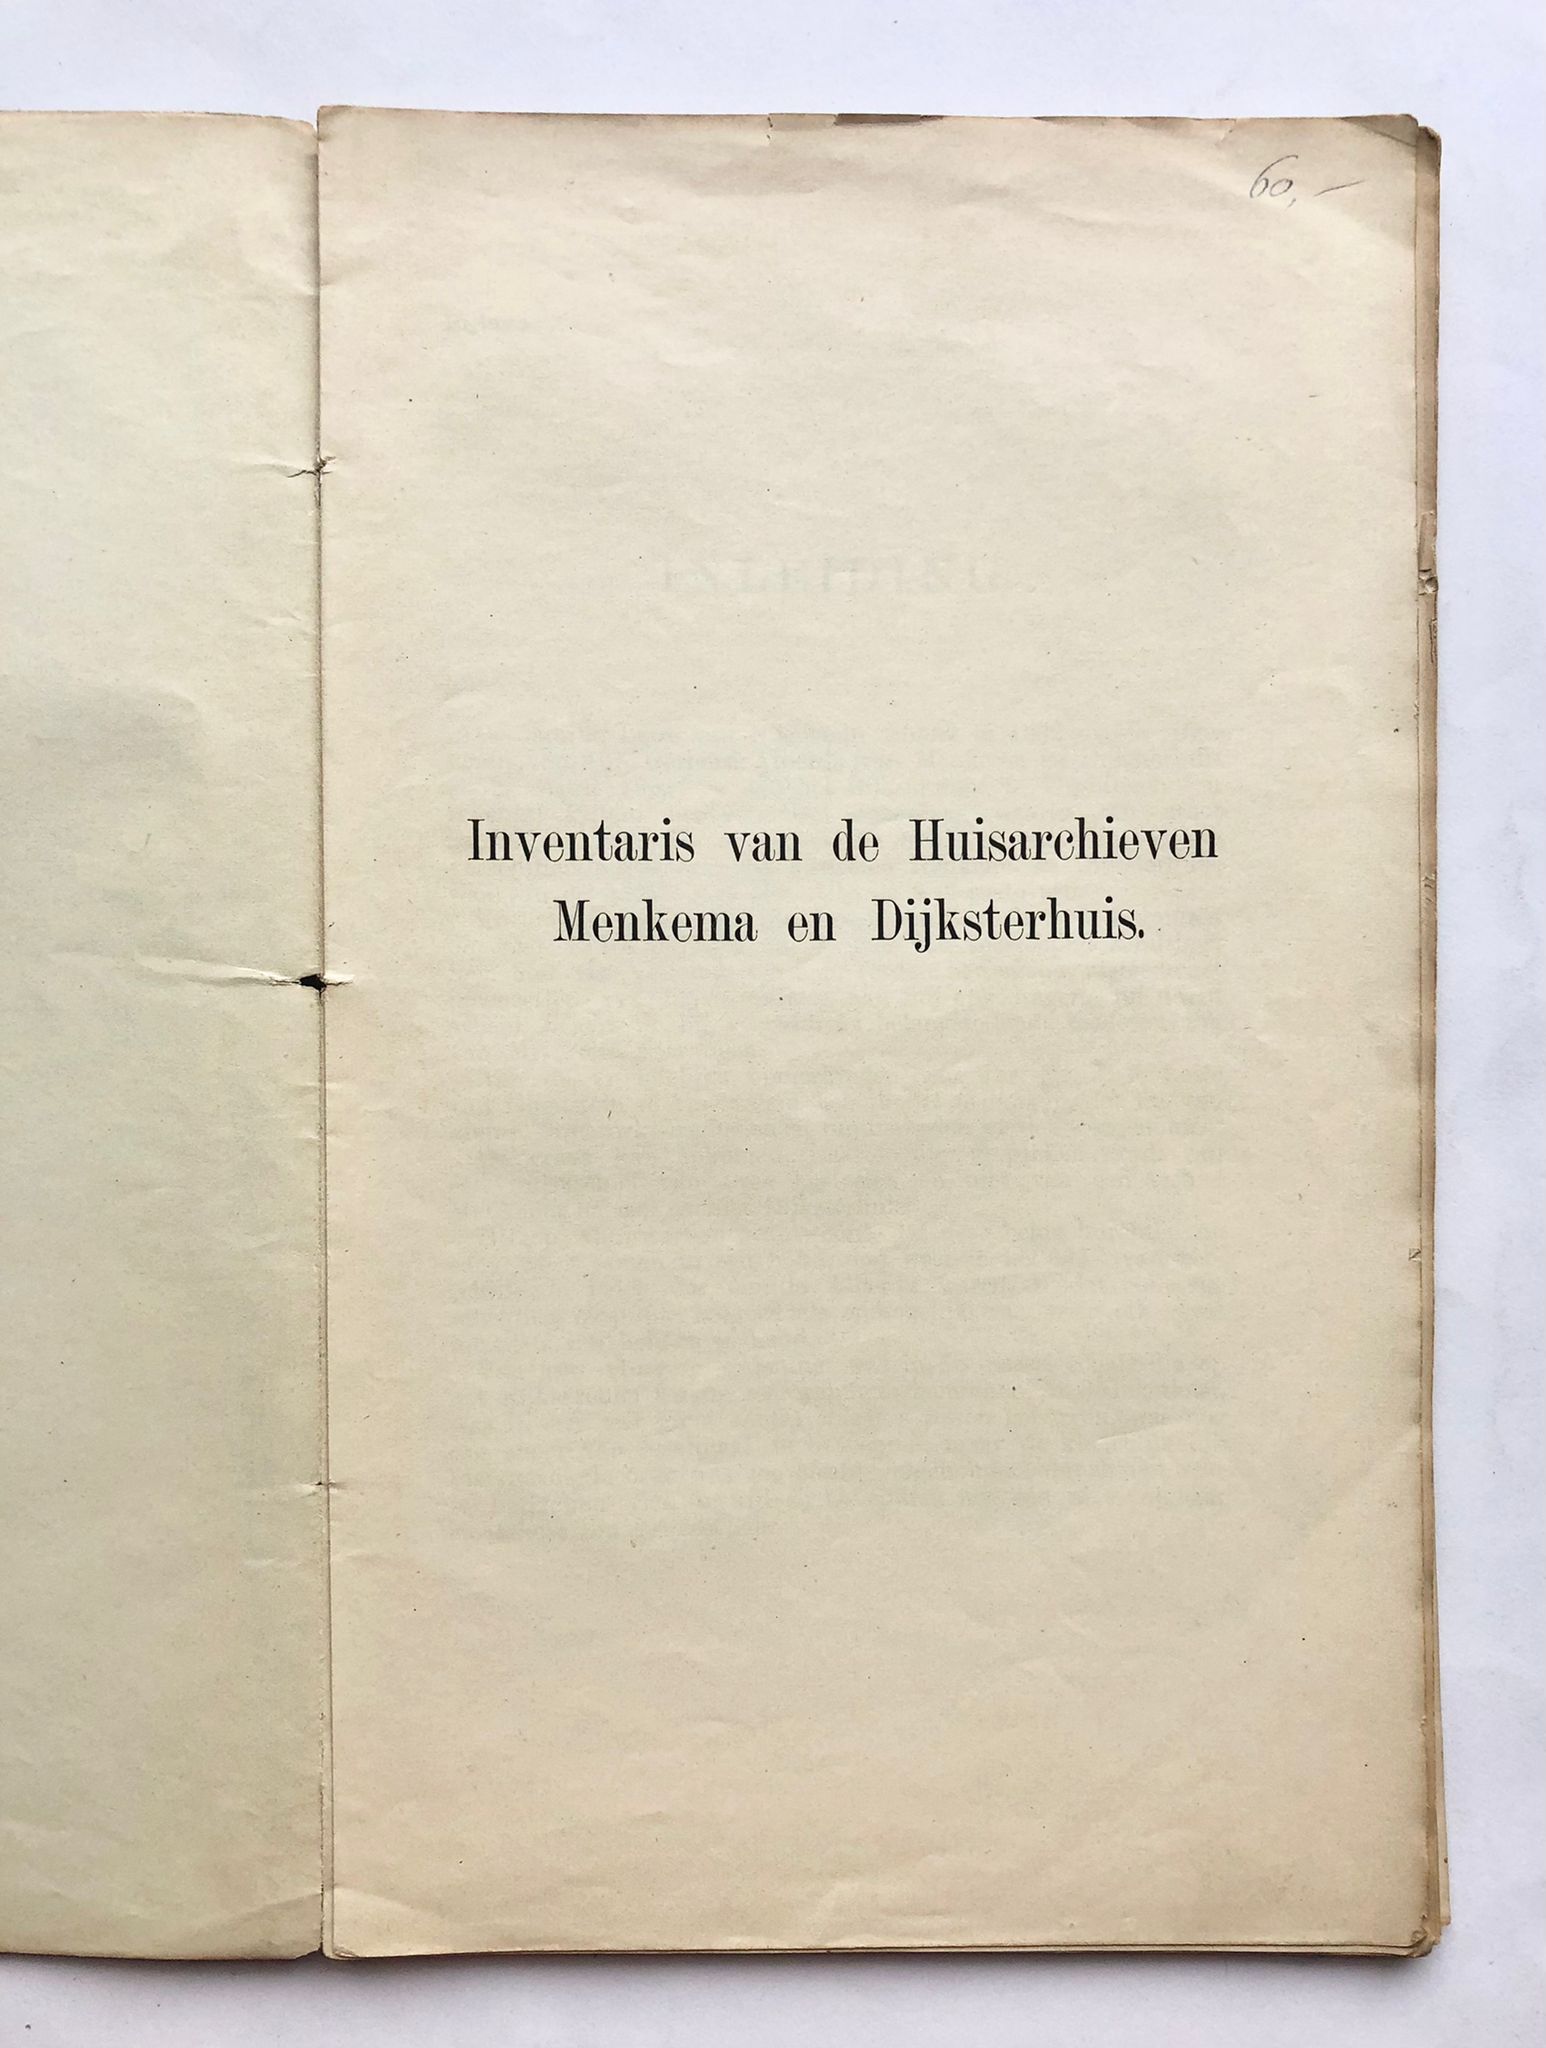 Inventaris van de Huisarchieven Menkema en Dijksterhuis, P. G. Bos, April, 1904, van pagina 317 tot 424, 110 pp.